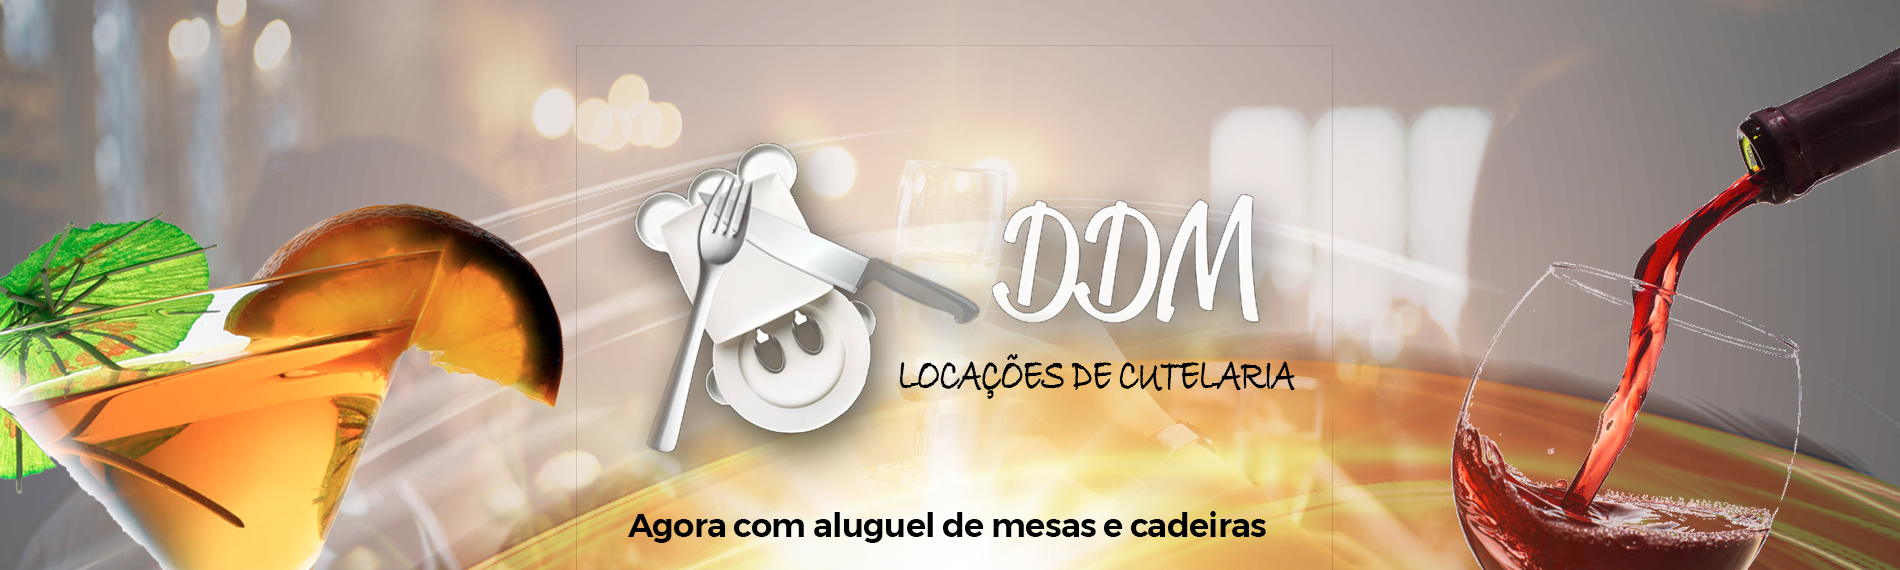 banner da empresa DDM Locações de Cutelaria